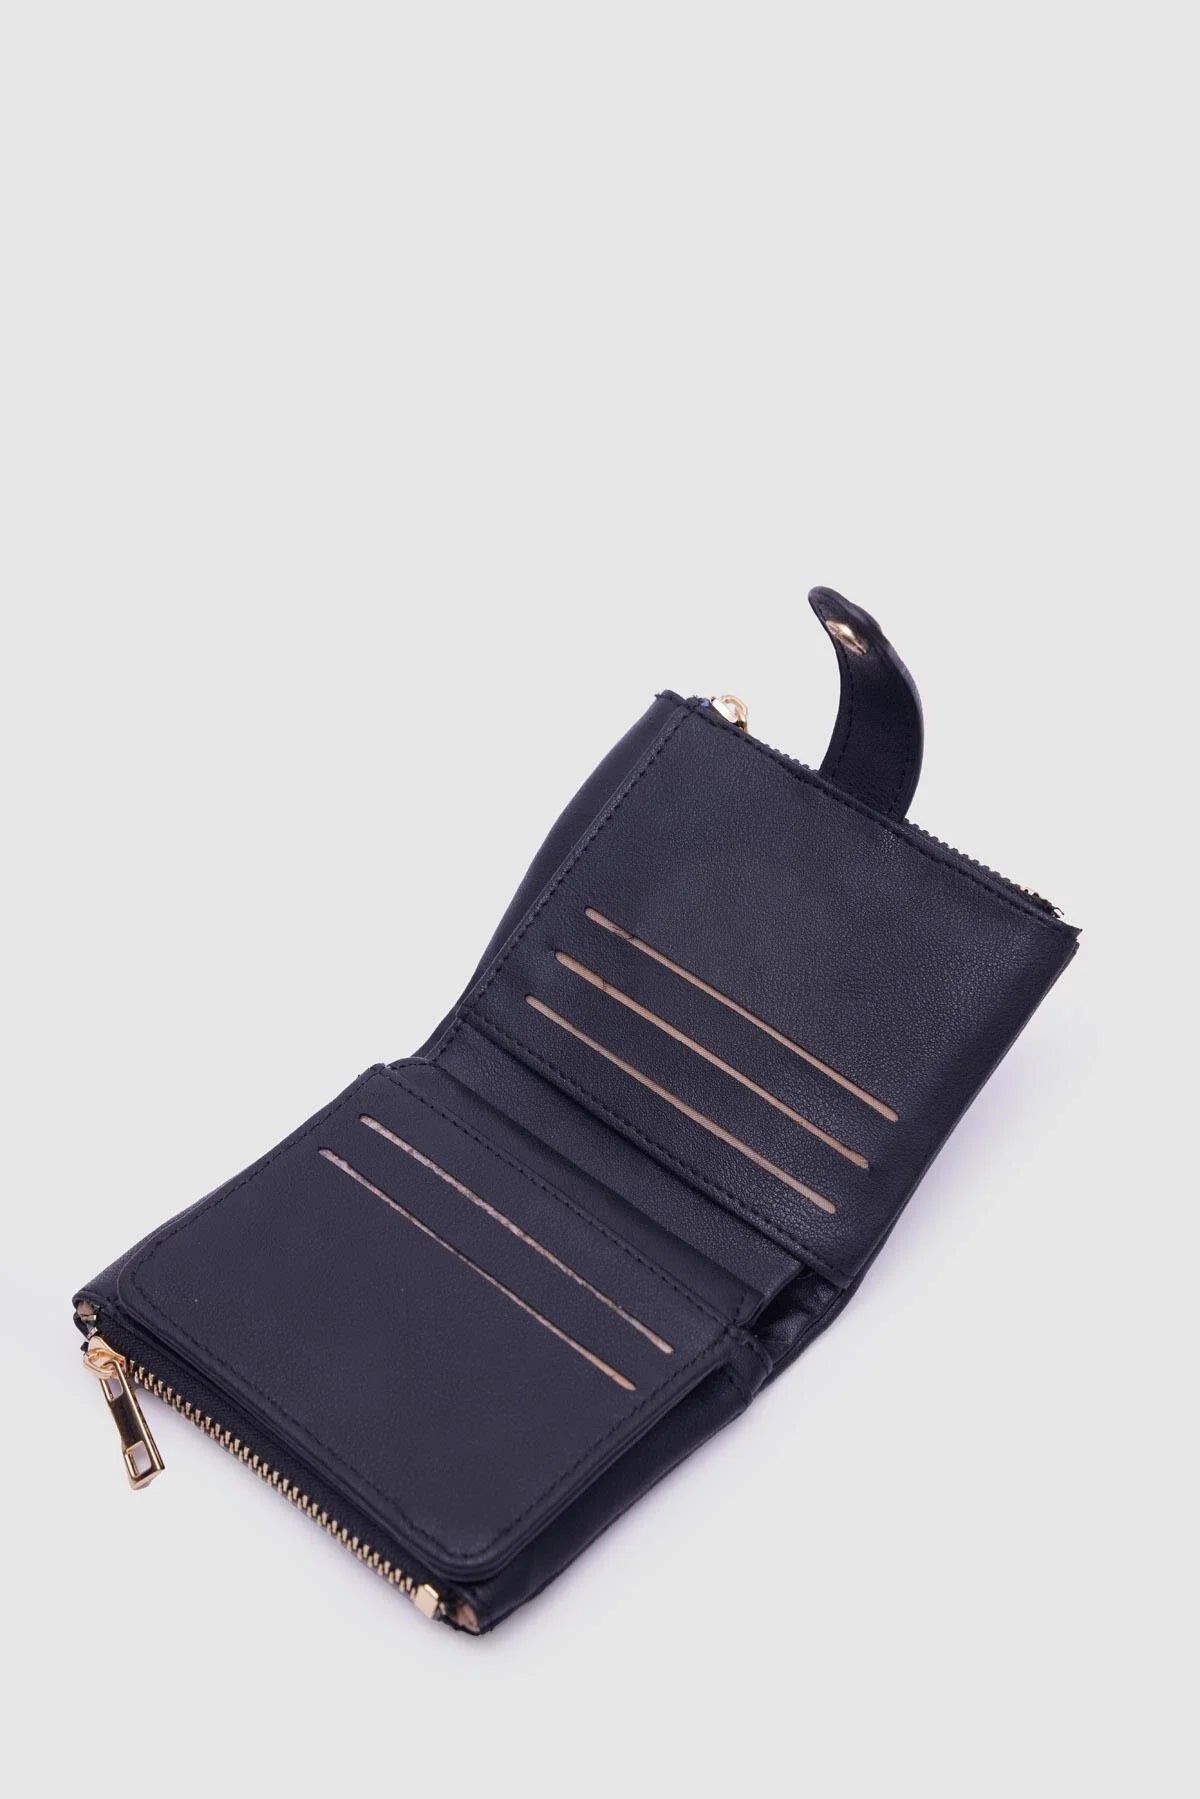 Soft Leather Black Wallet wallet LUNARITY GARAGE   